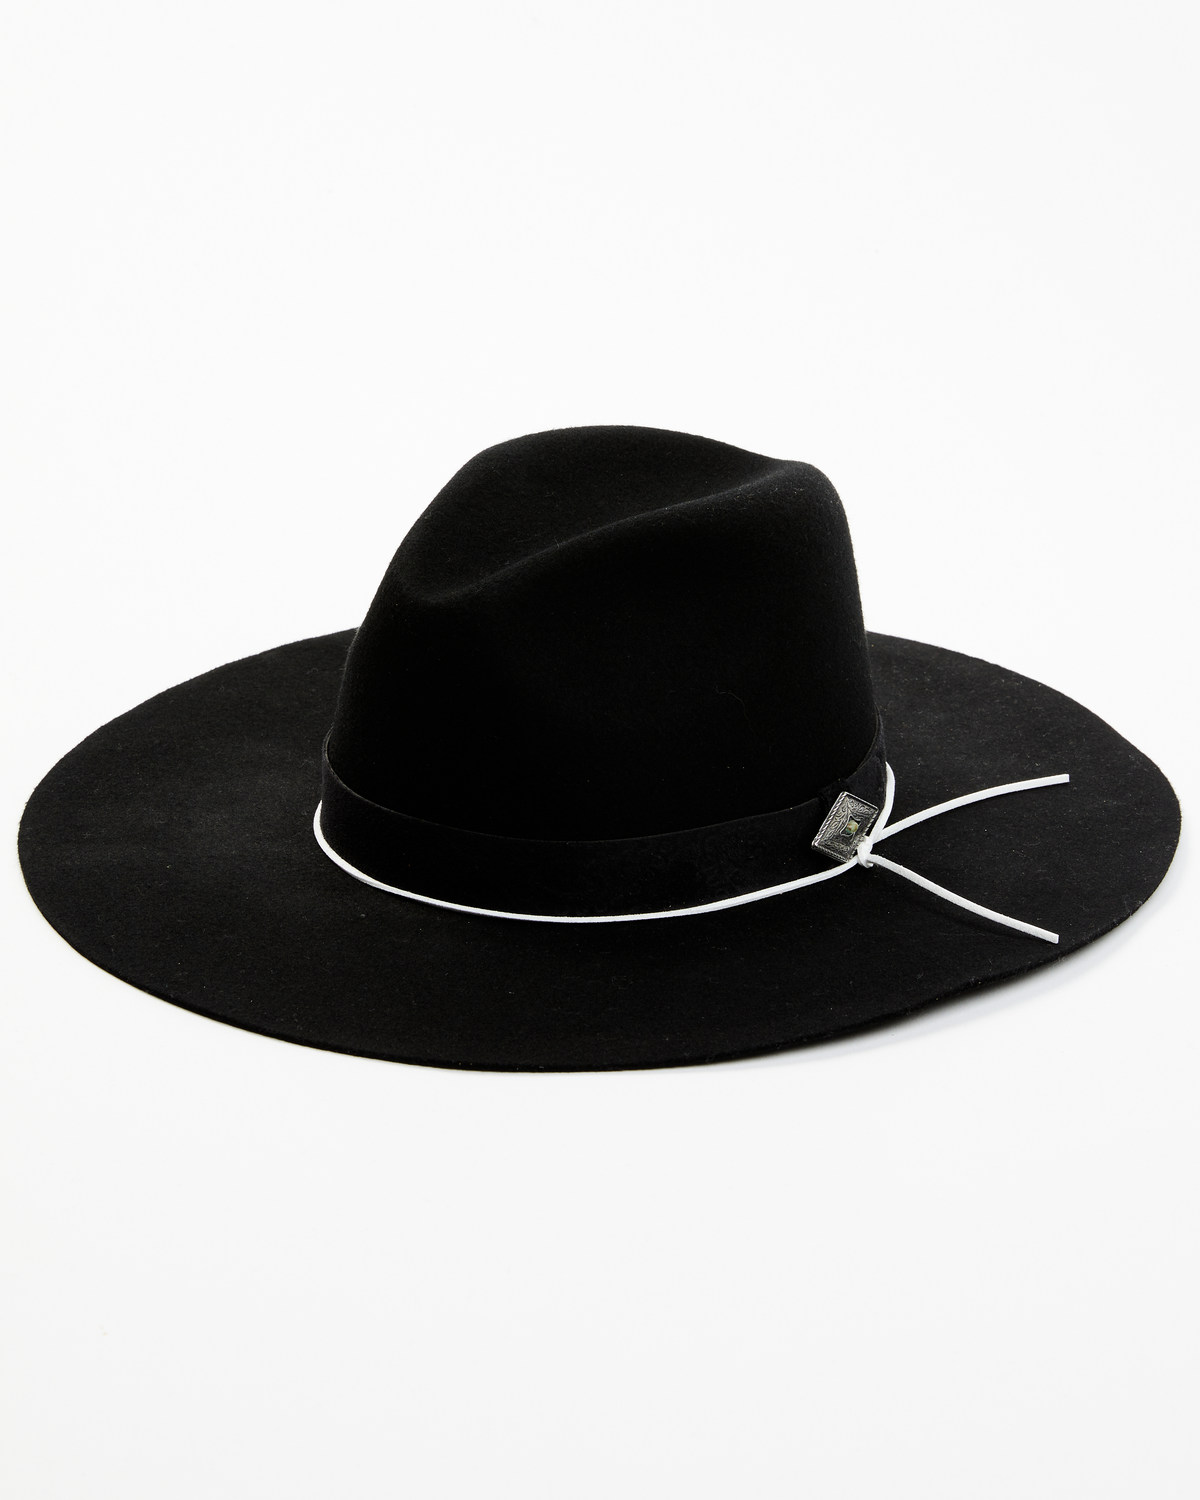 Idyllwind Women's Waycross Felt Western Fashion Hat